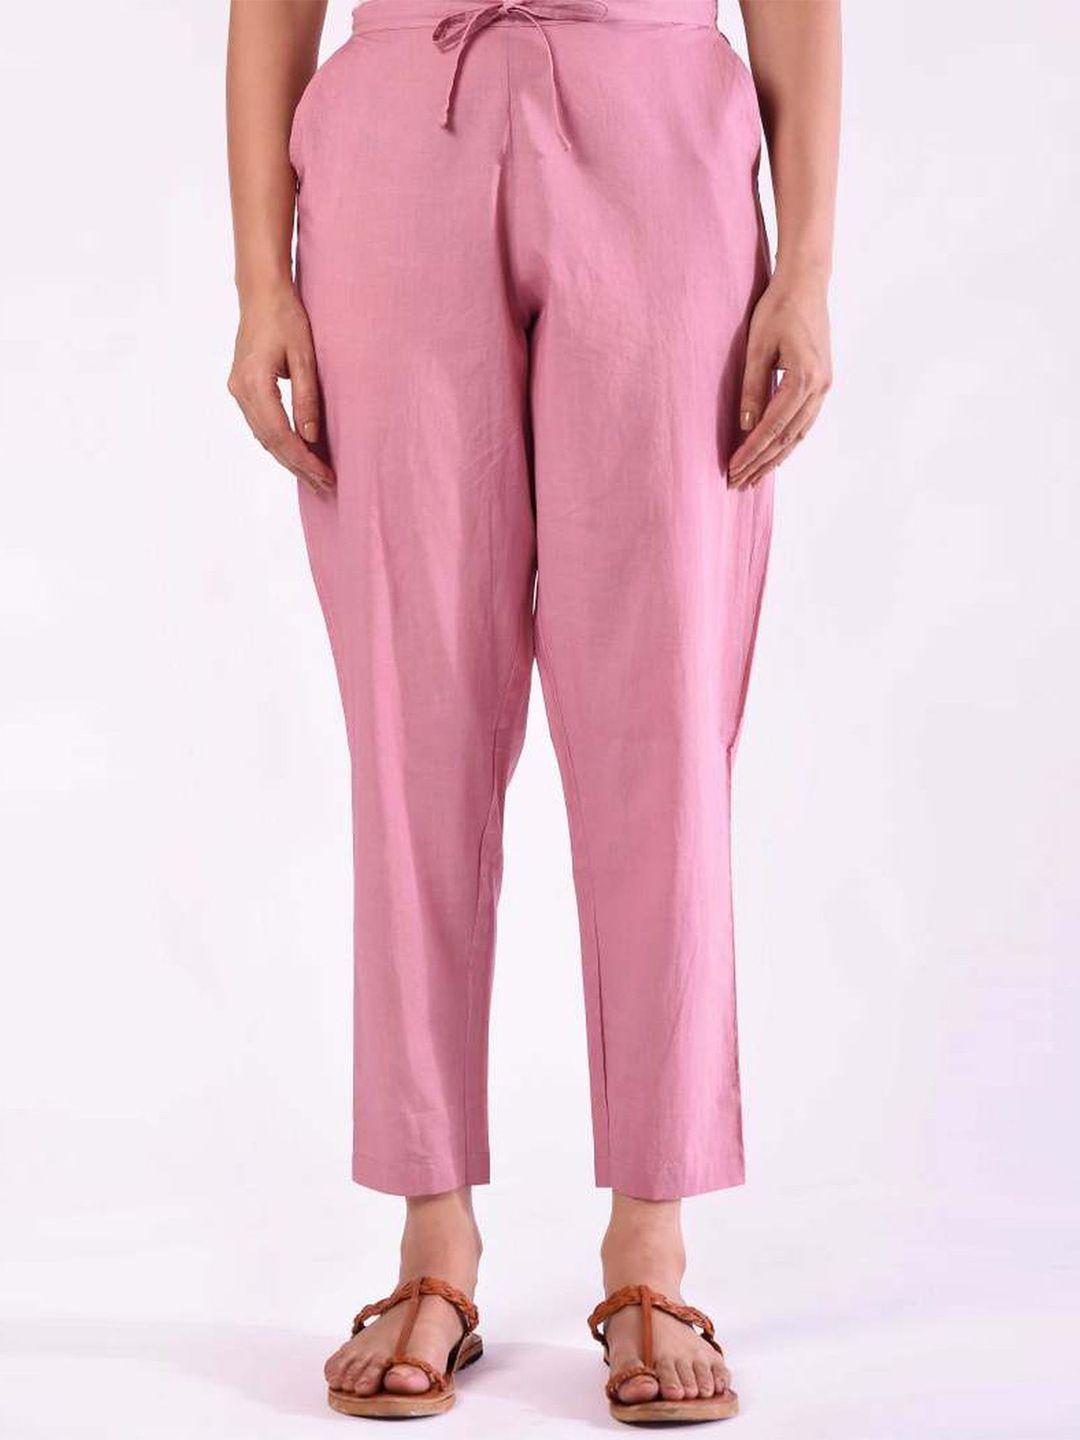 prakriti-jaipur-cotton-mid-rise-trouser